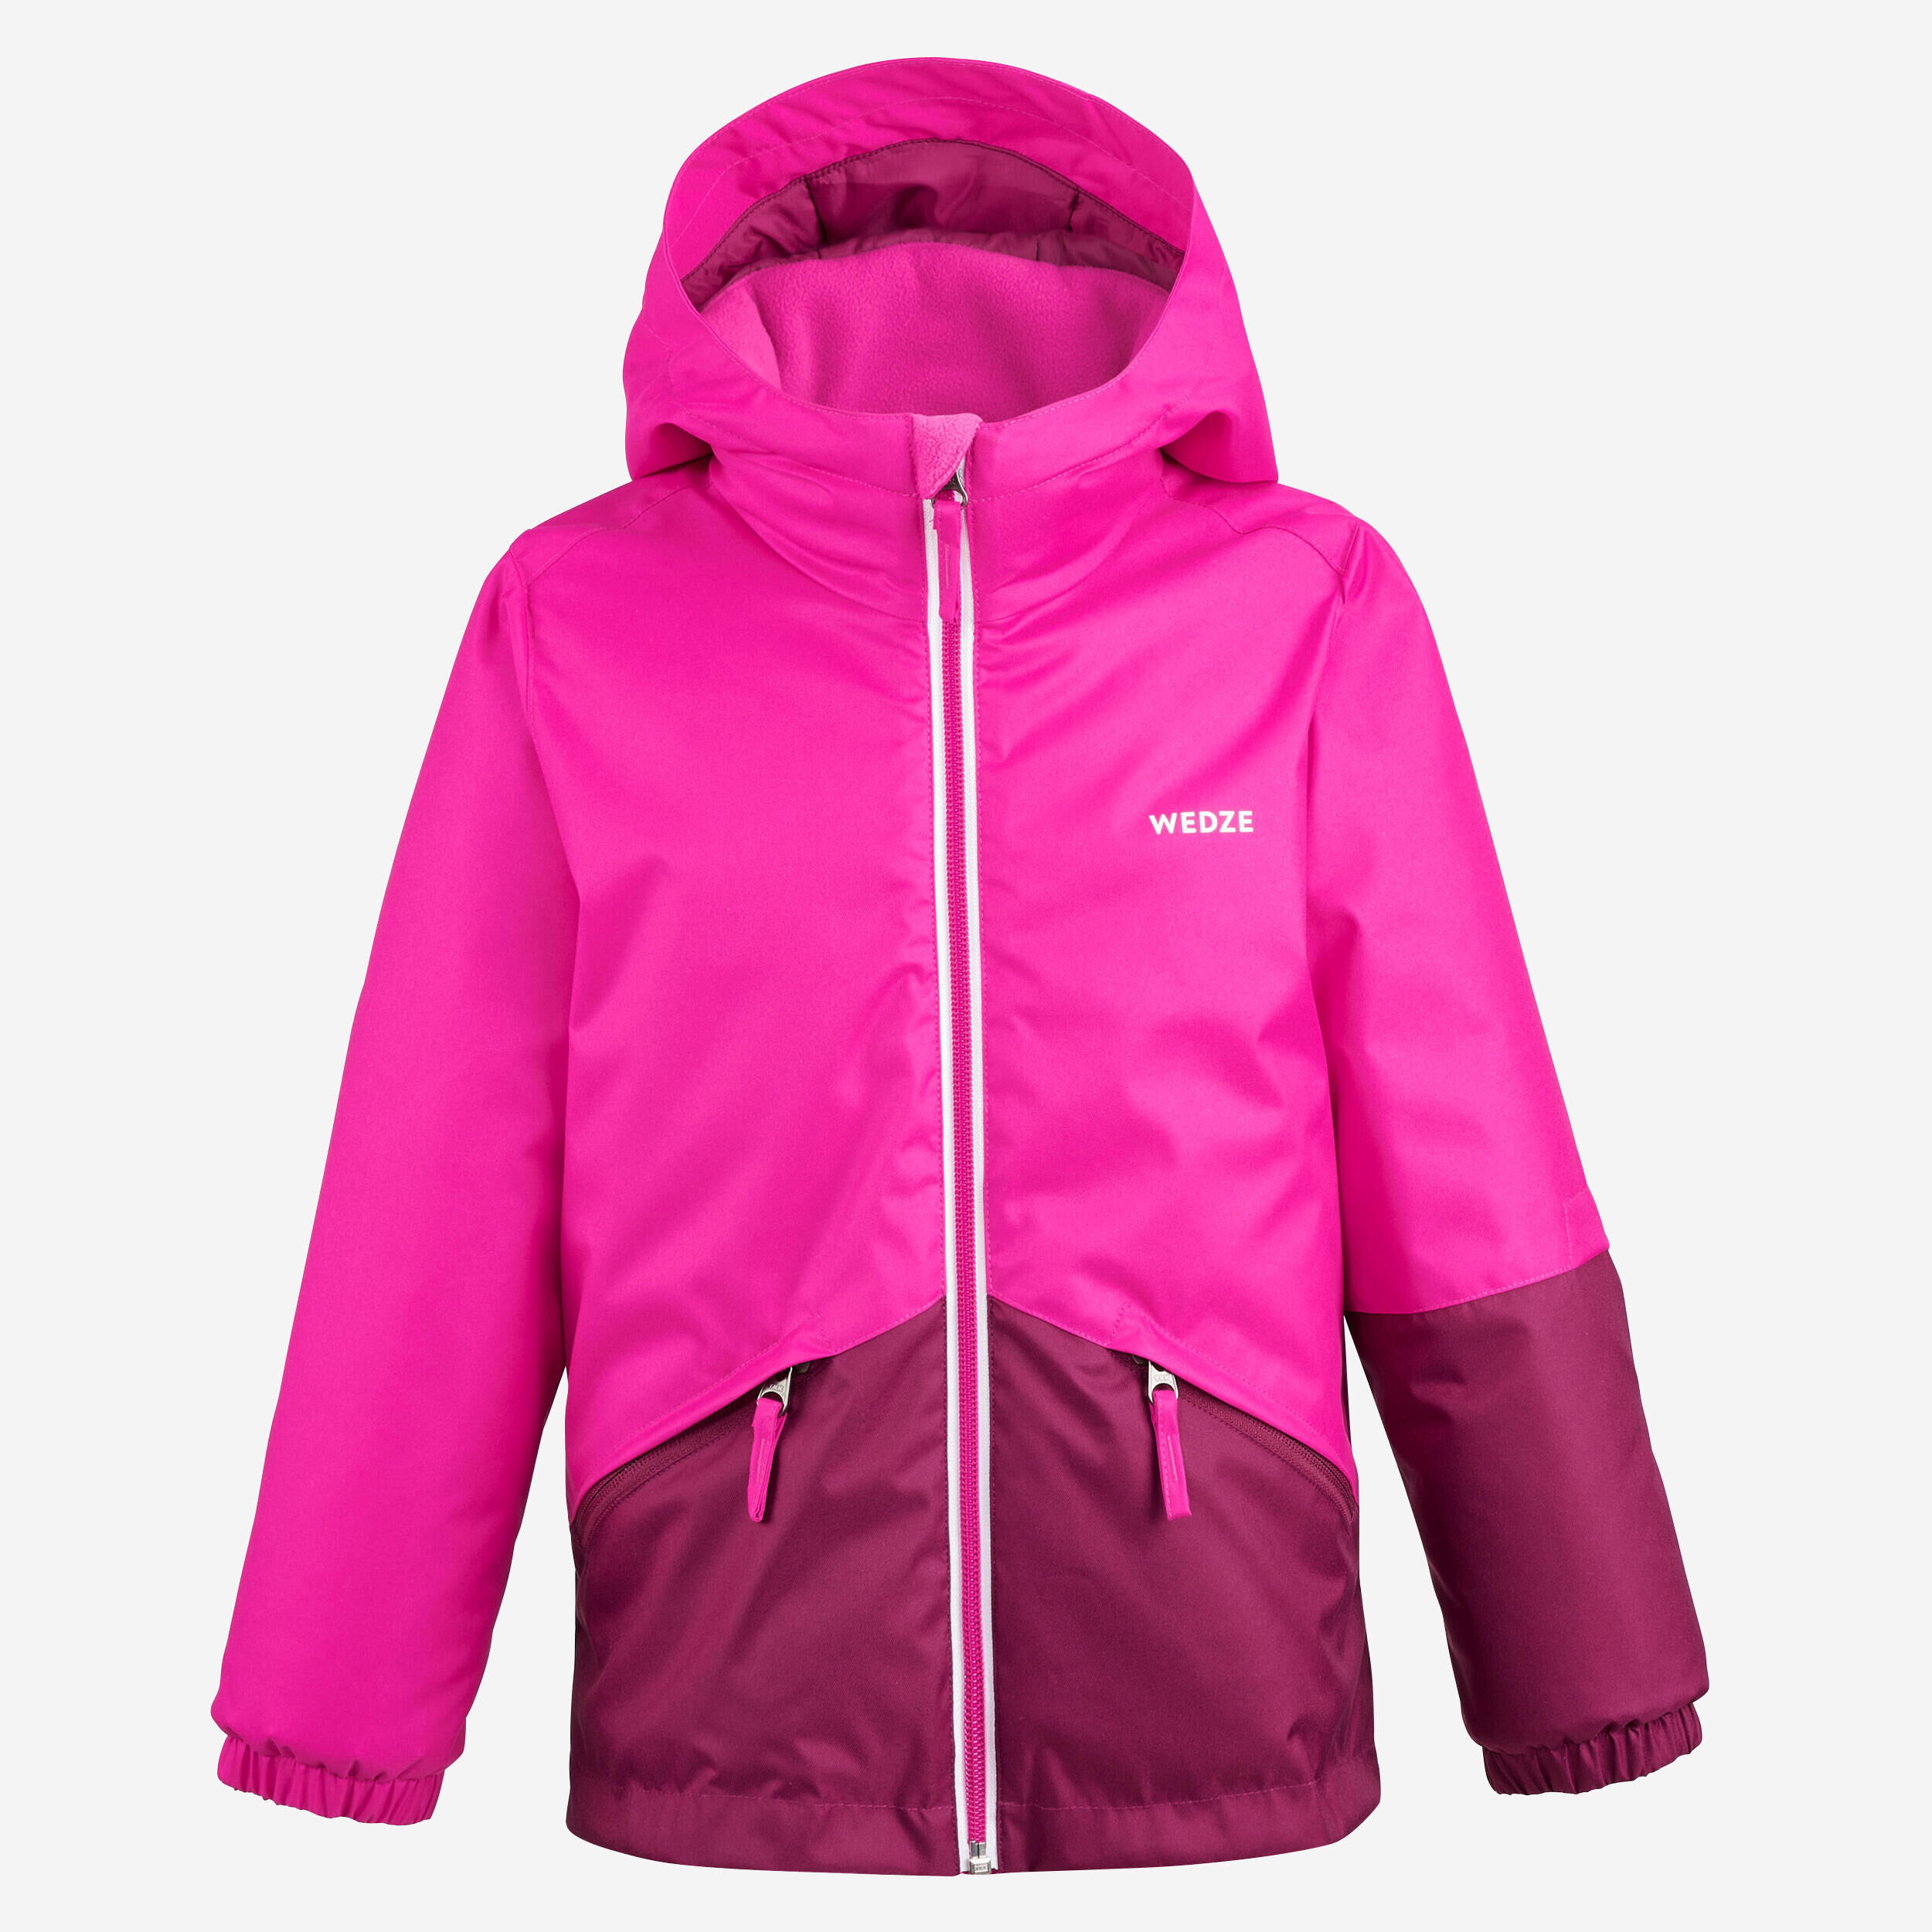 WEDZE Kids’ Warm and Waterproof Ski Jacket – 100 Pink